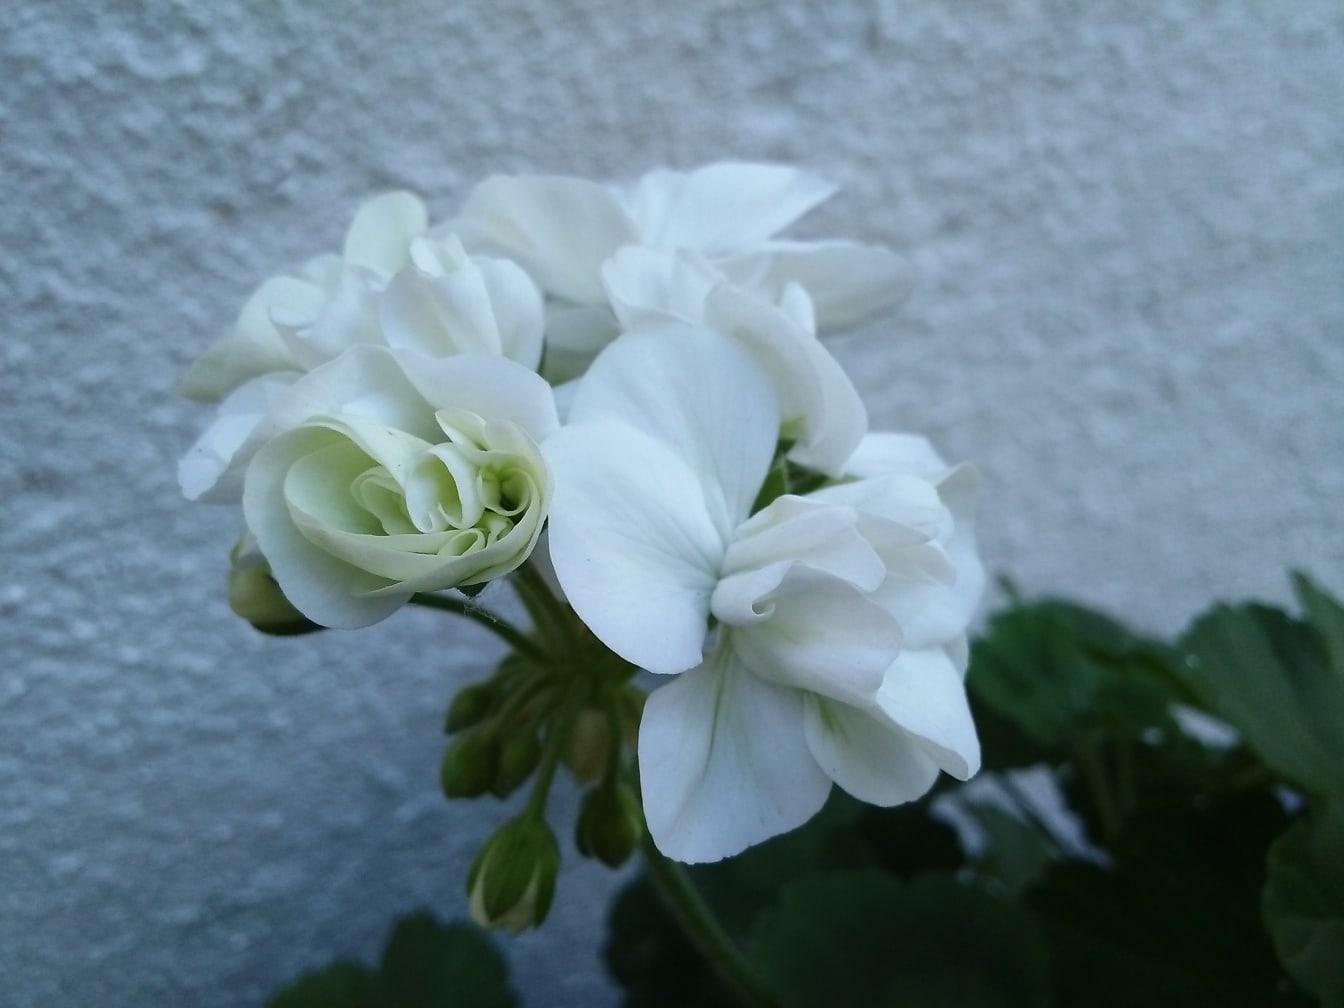 Uma flor de gerânio branco puro (Pelargonium hortorum)